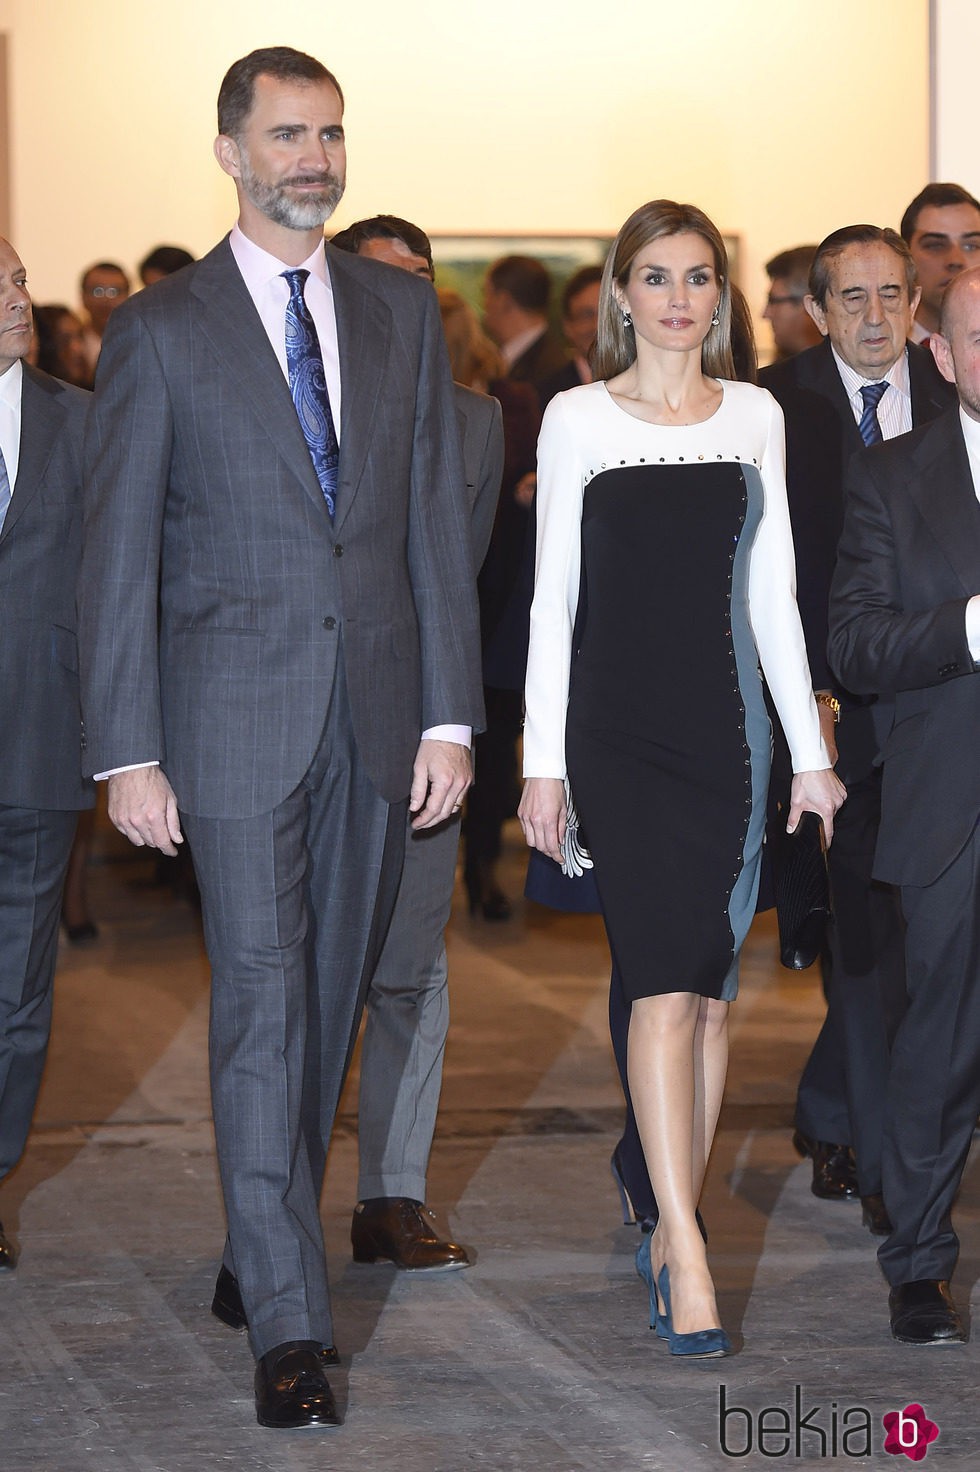 Los Reyes Felipe y Letizia en la inauguración de ARCO 2015